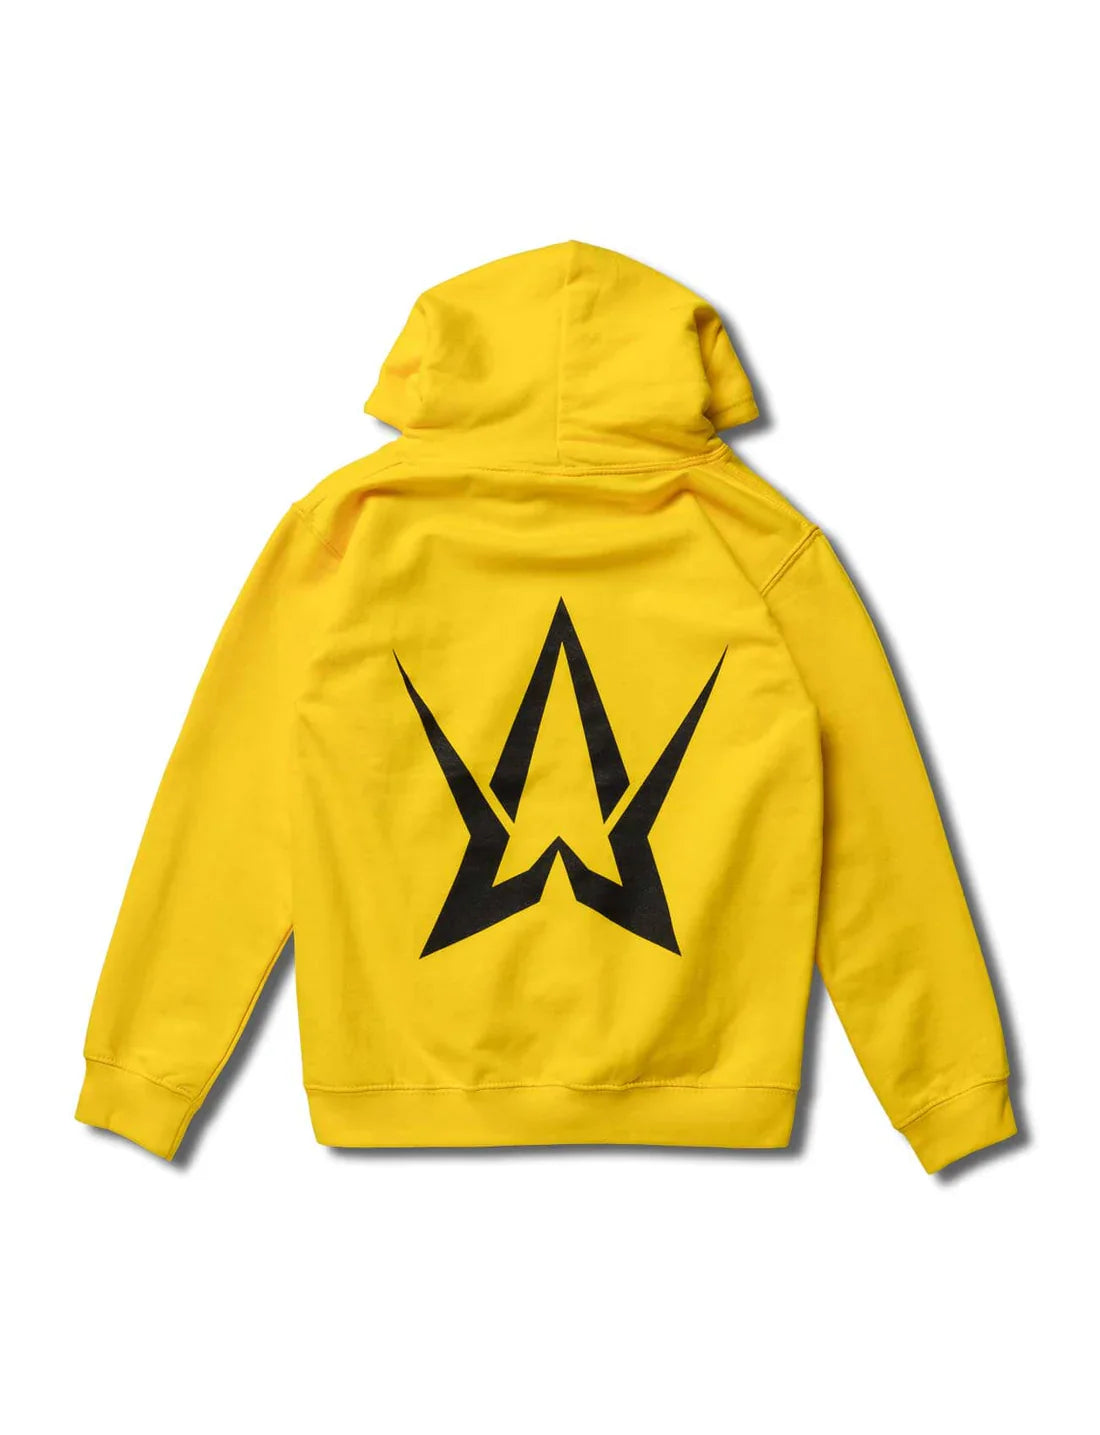 Back view of kids' Alan Walker yellow hoodie showcasing large black logo.